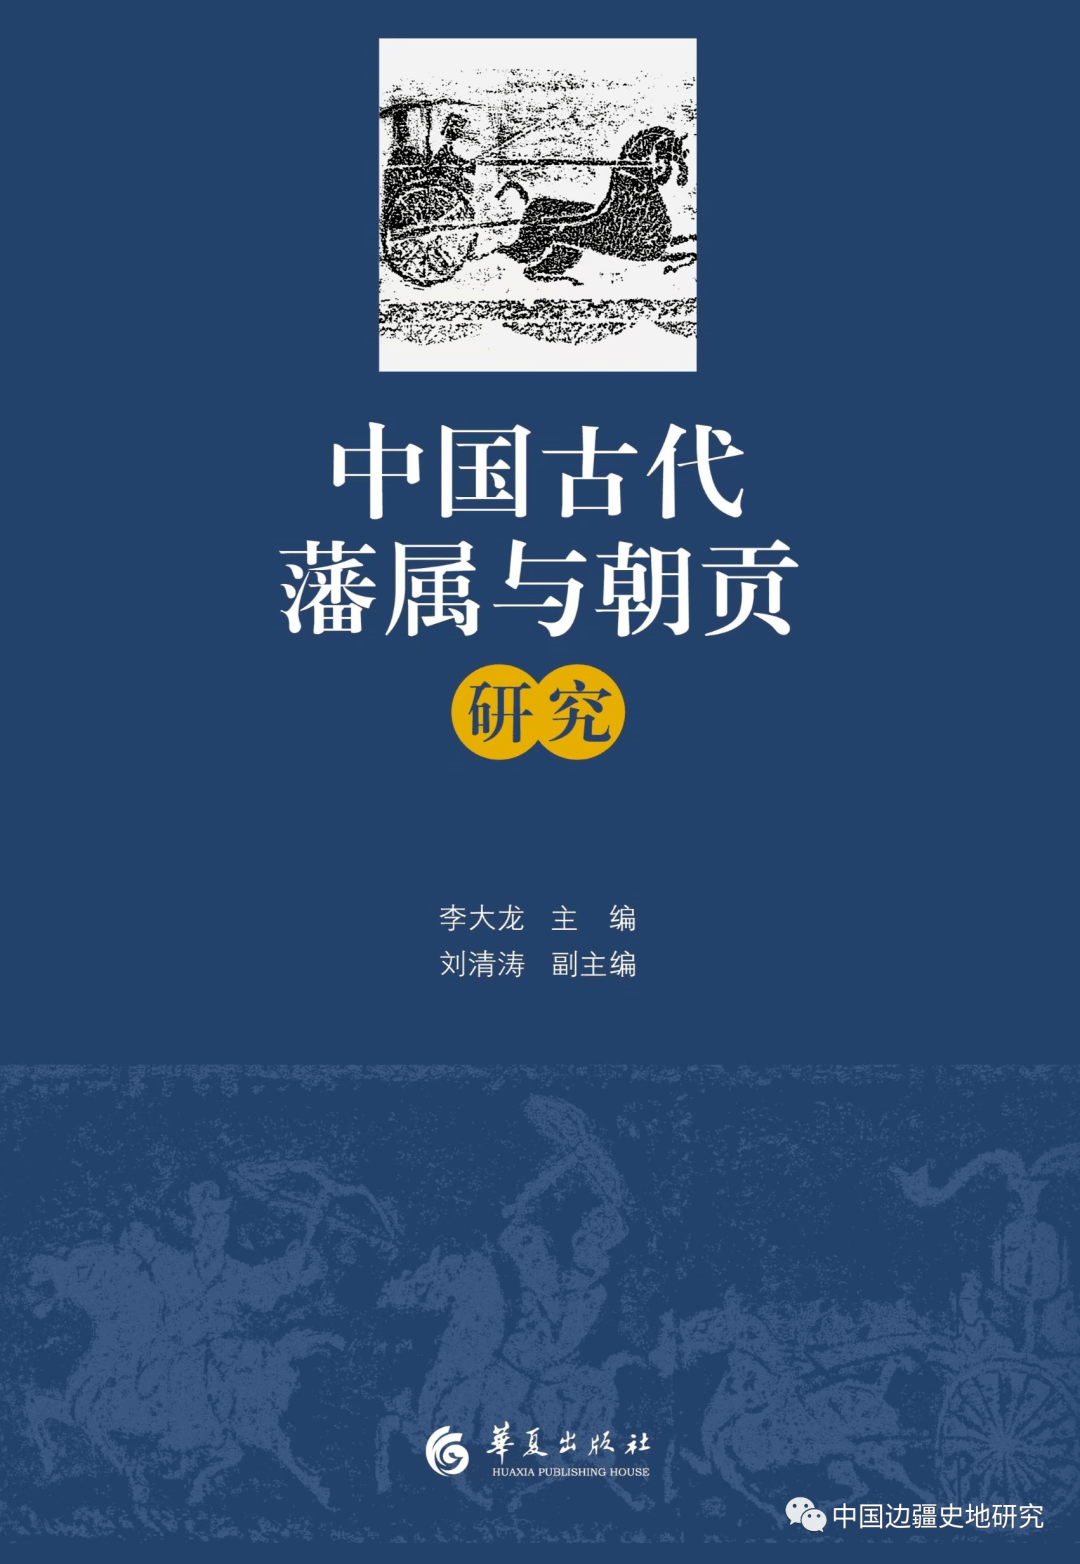 李大龙、刘清涛主编《中国古代藩属与朝贡研究》出版_手机搜狐网